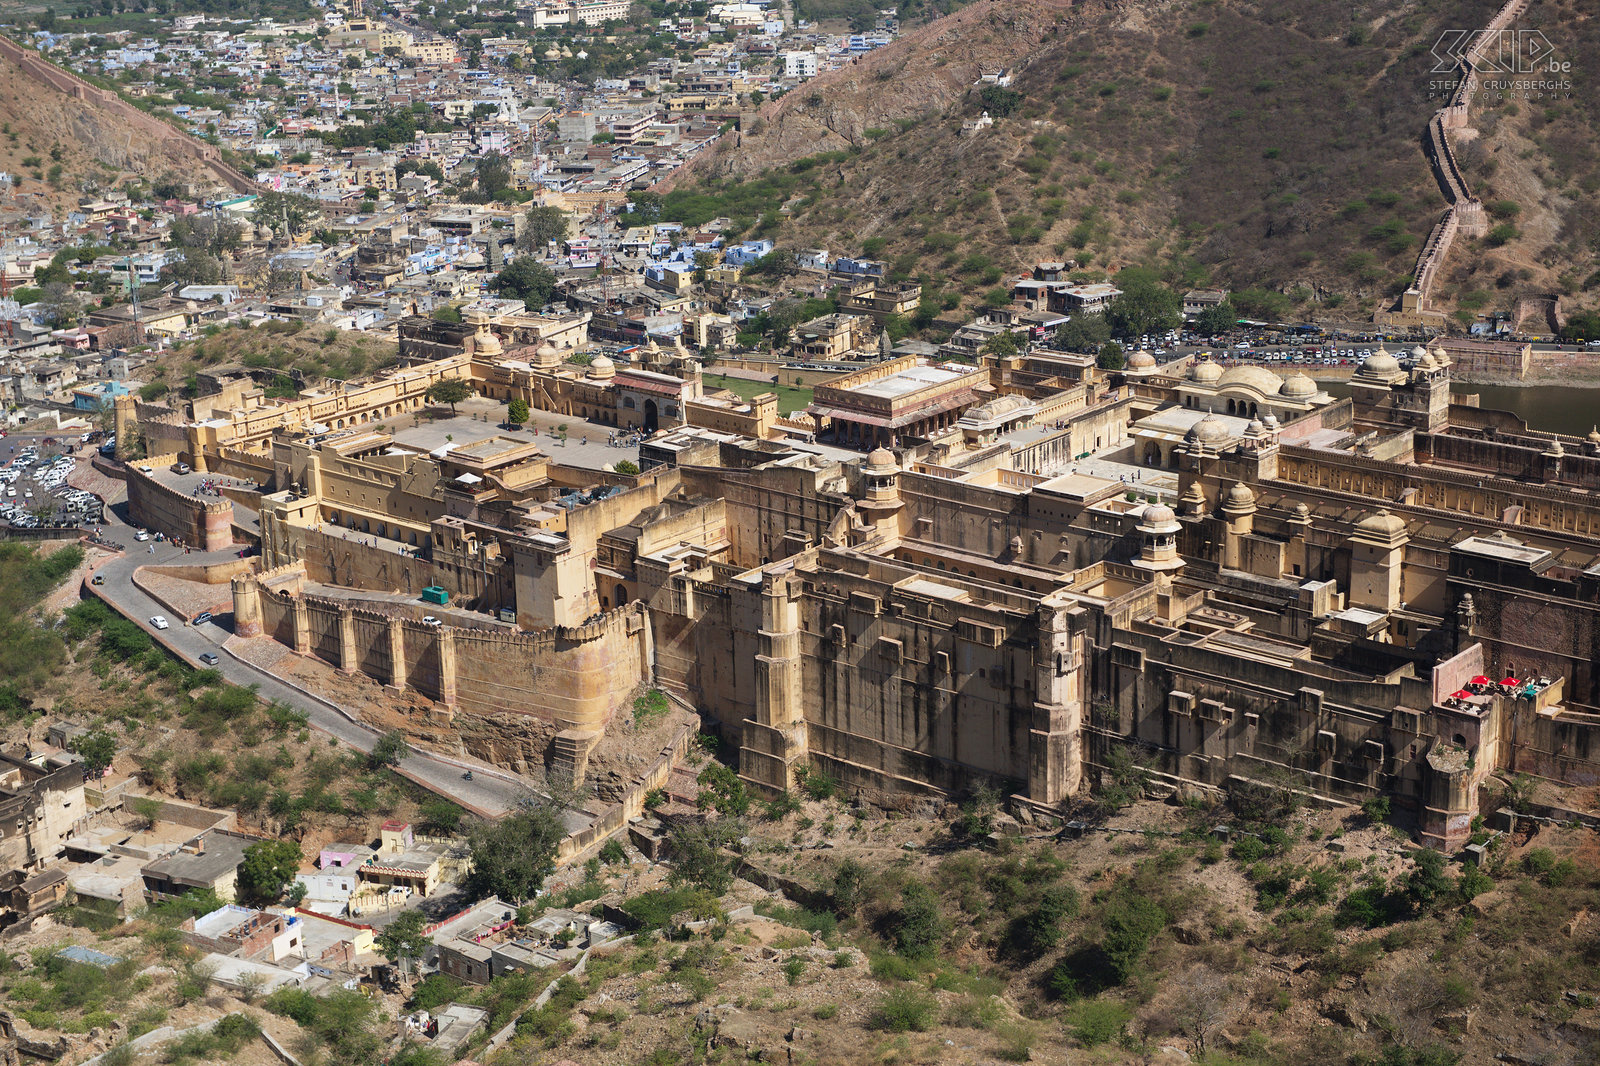 Jaipur - Amber fort Vanaf het Jaigarh fort heb je een schitterend zicht op het indrukwekkende Amber fort. Stefan Cruysberghs